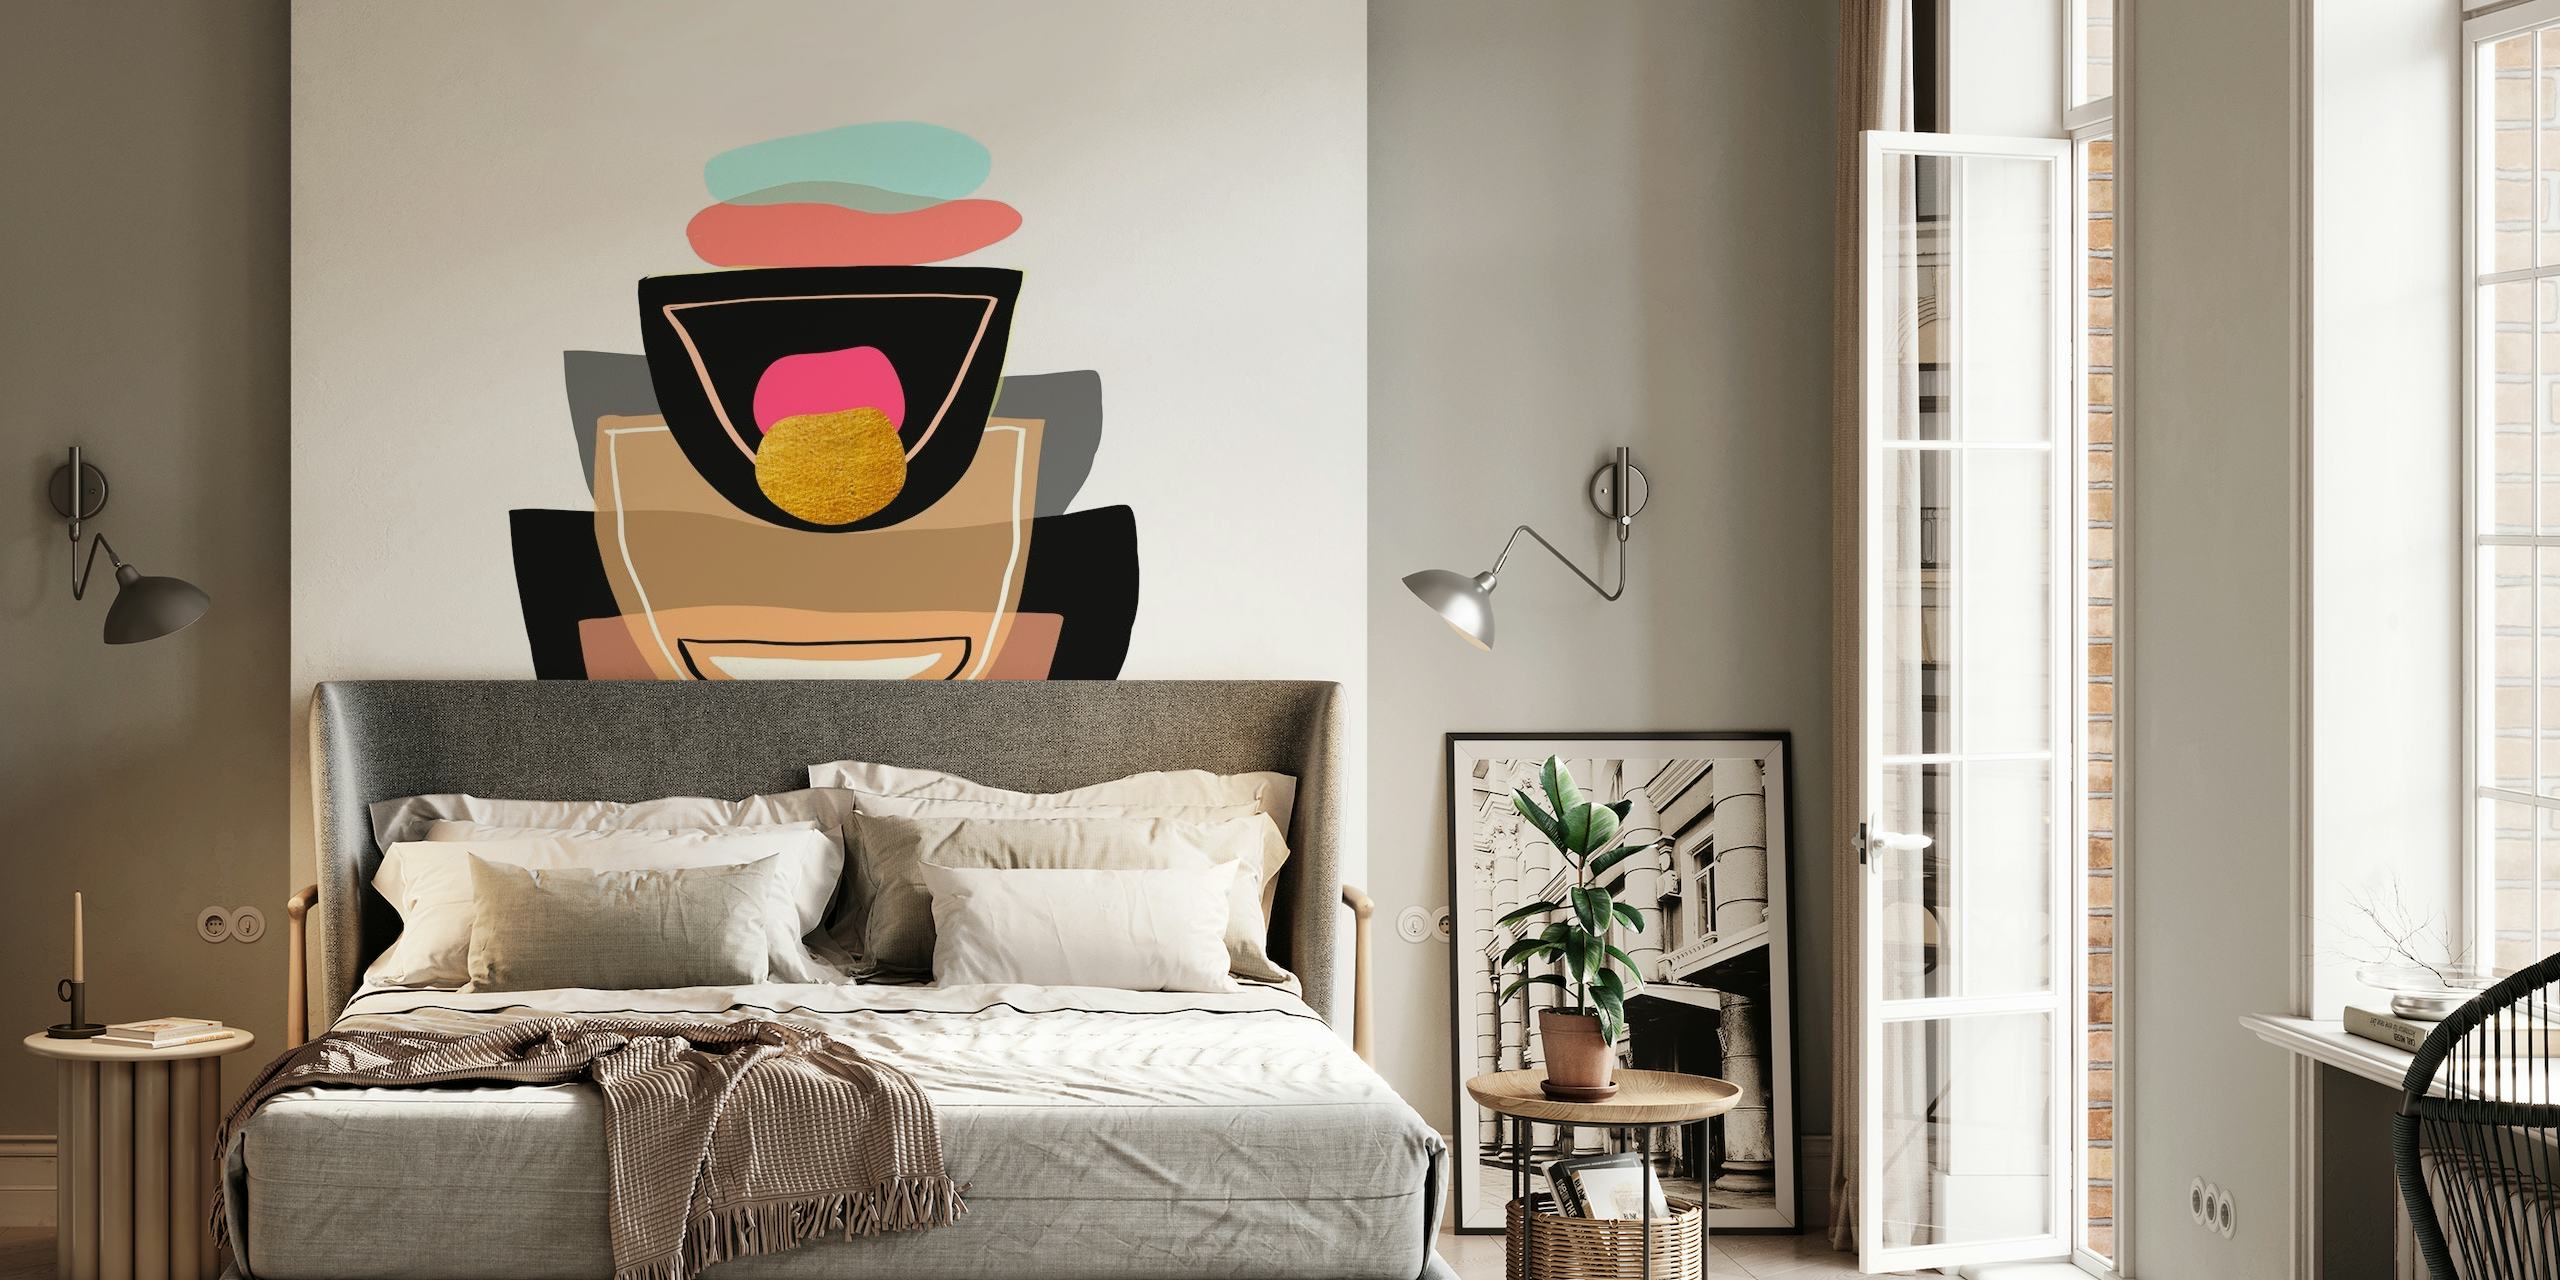 Muurschildering met abstracte geometrische vormen in pastel- en terracotta tinten